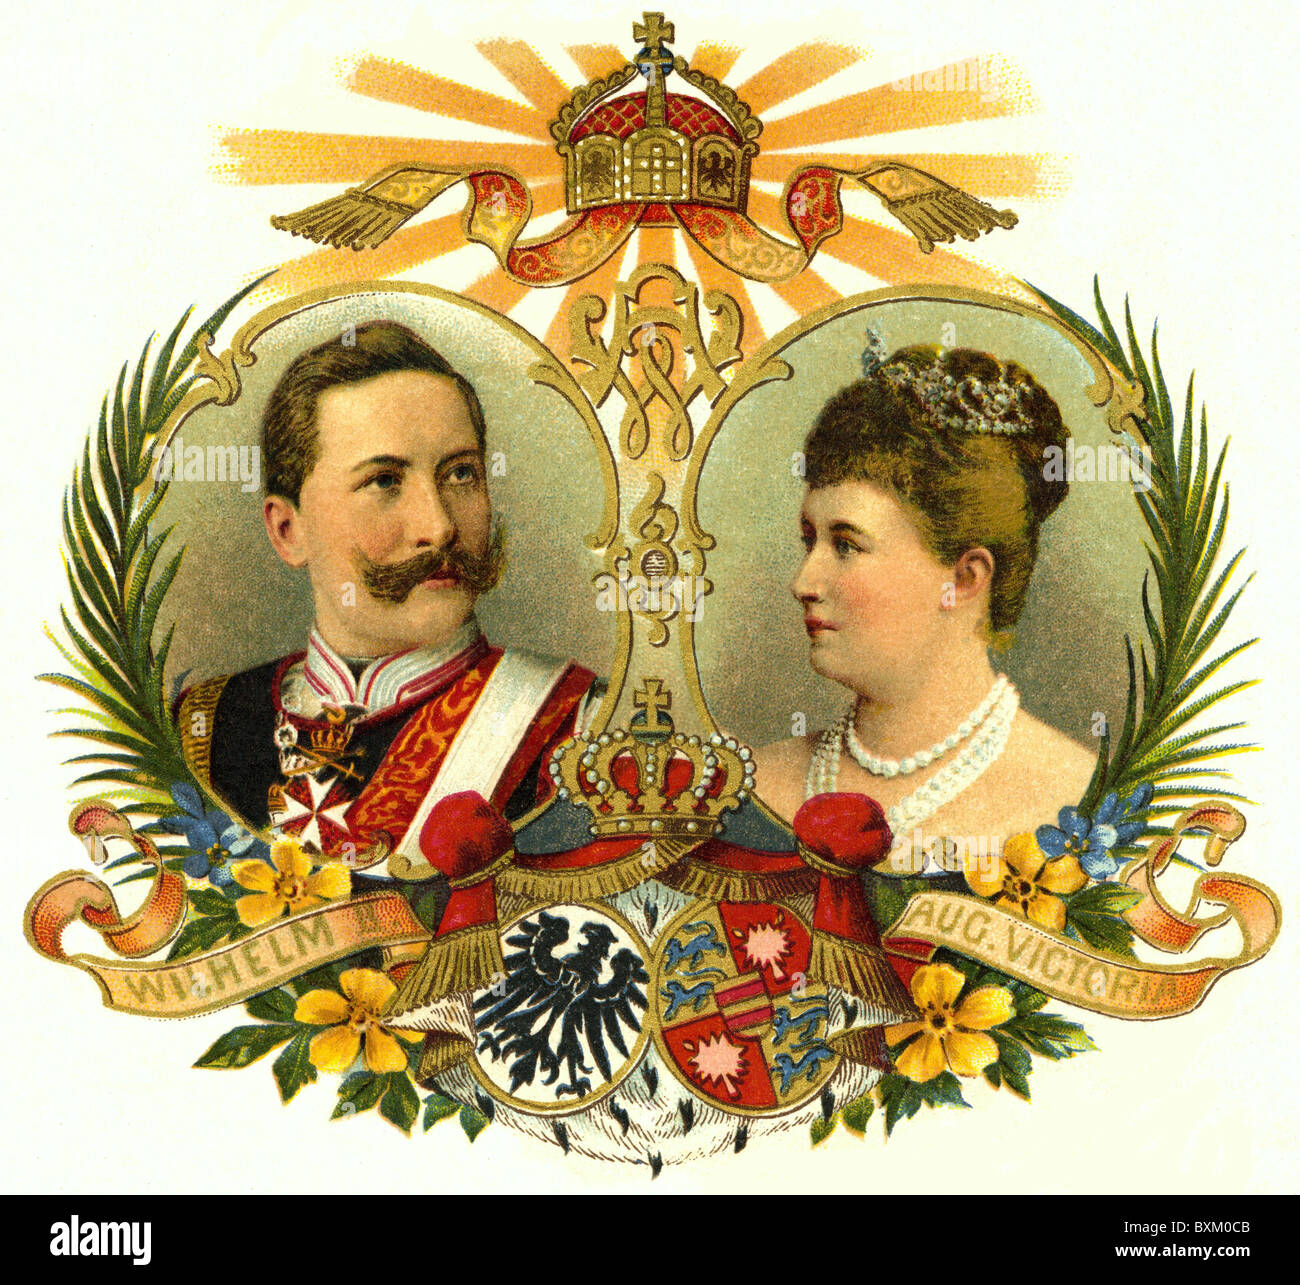 Wilhelm II, 27.1.1859 - 4.6.1941, imperatore tedesco 1888 - 1918, ritratto, con sua moglie imperatrice Auguste Victoria, (1858 - 1921), litografia, 1900, Foto Stock